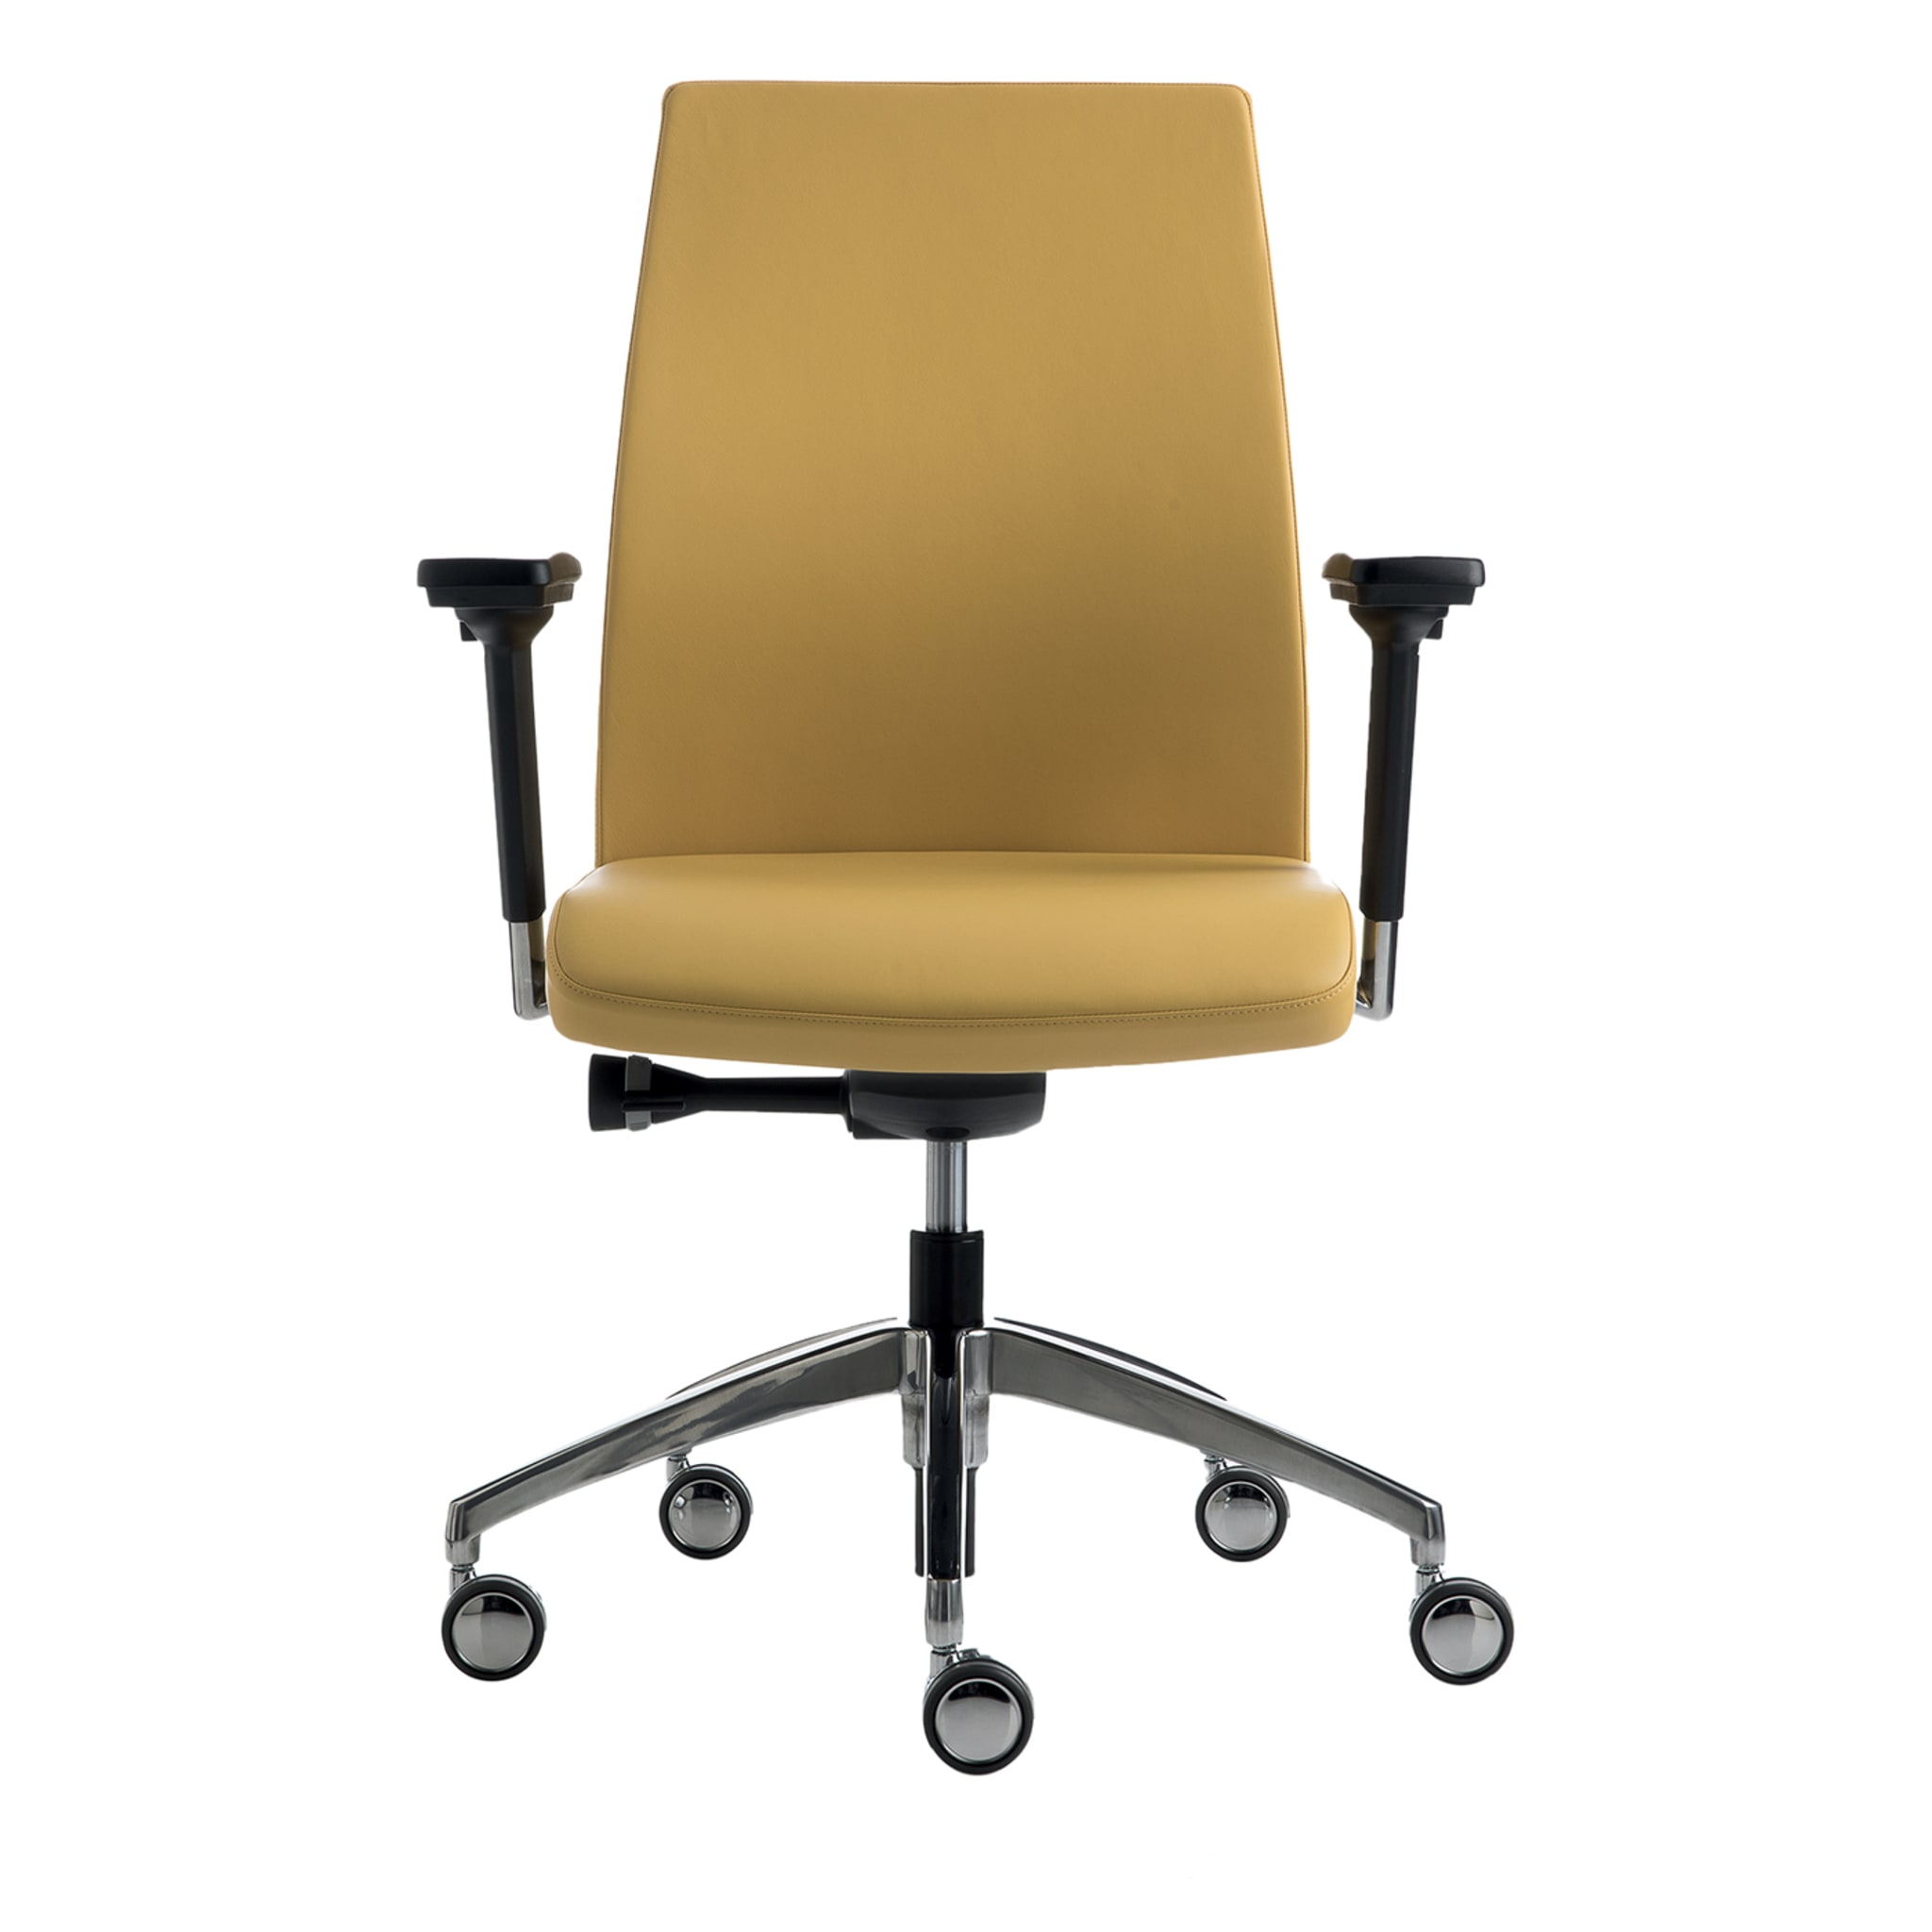 SmartOffice Yellow Swivel Chair - Main view